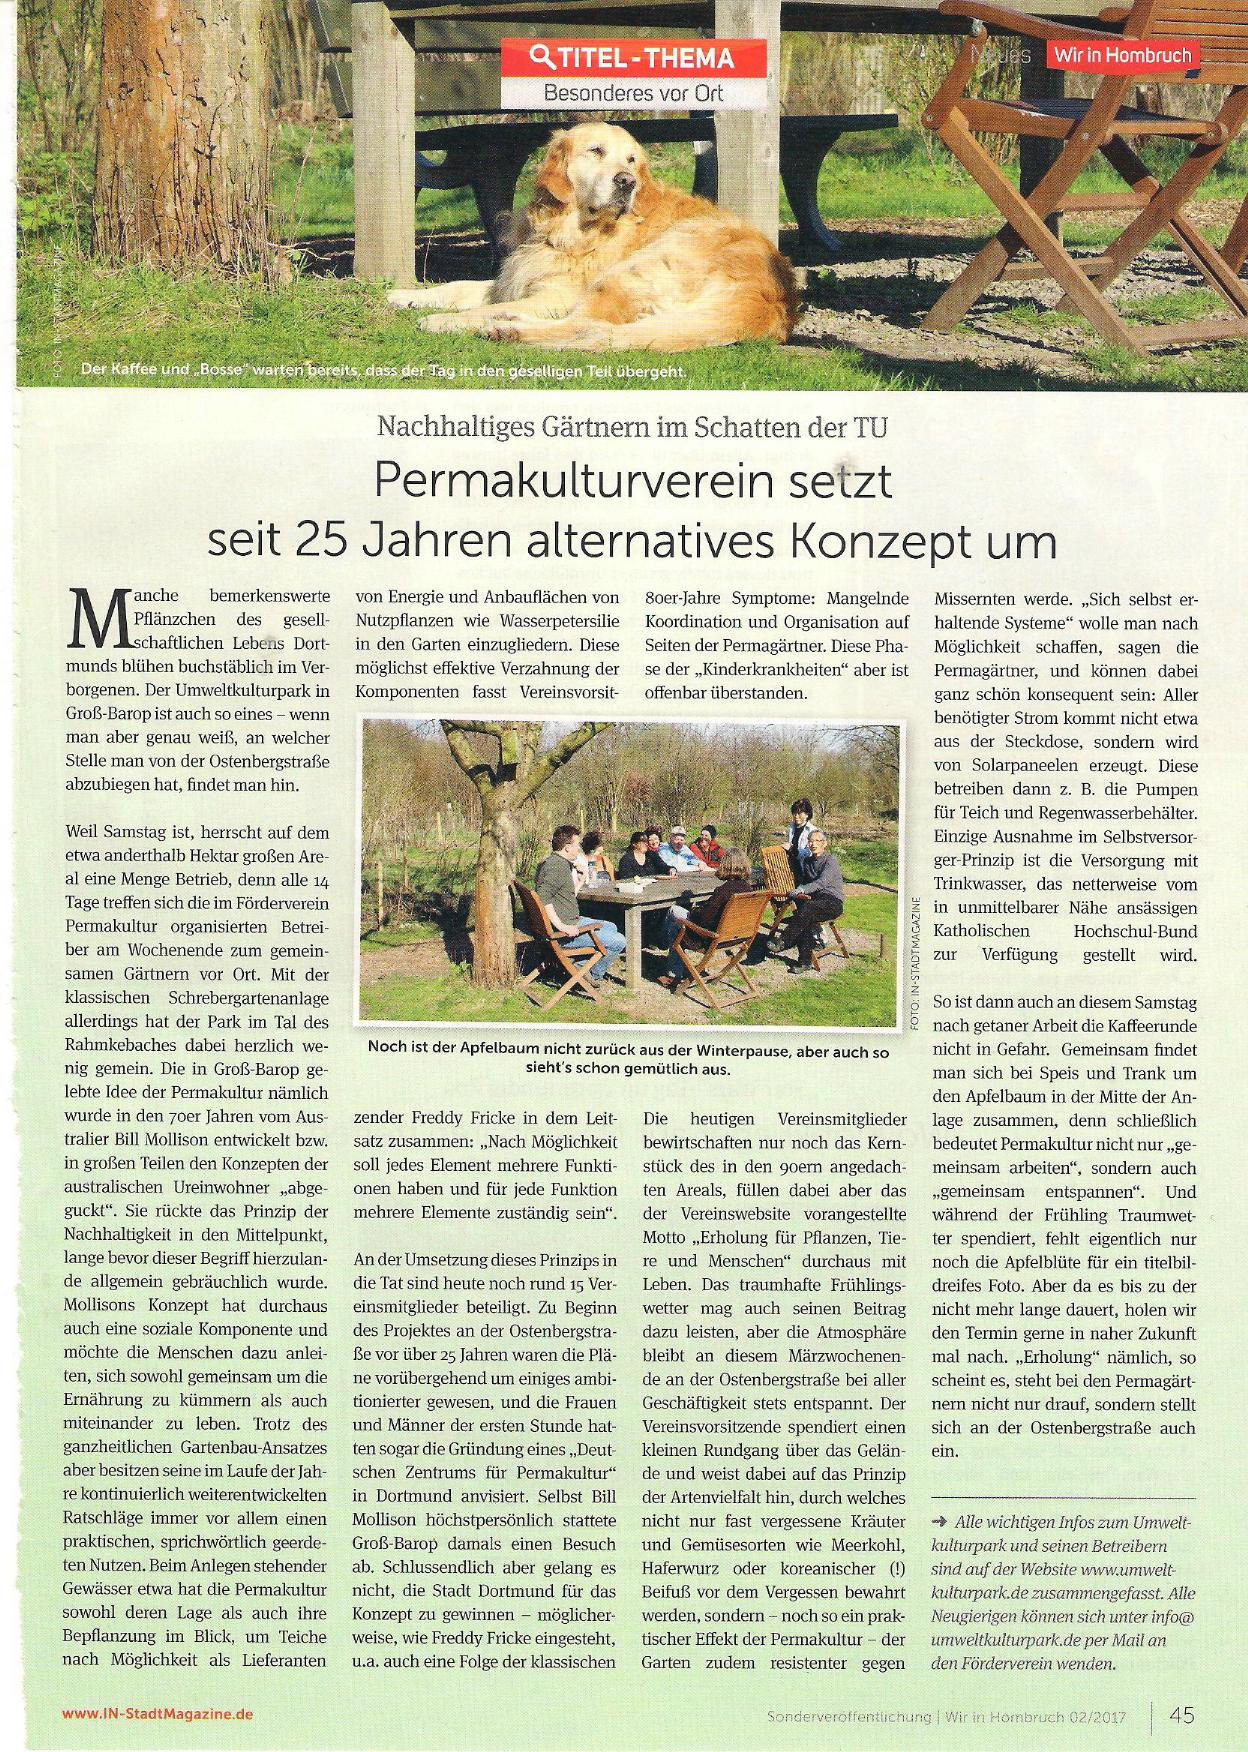 Permakulturgarten im Fruehling2017(IN-Stadtmagazine)